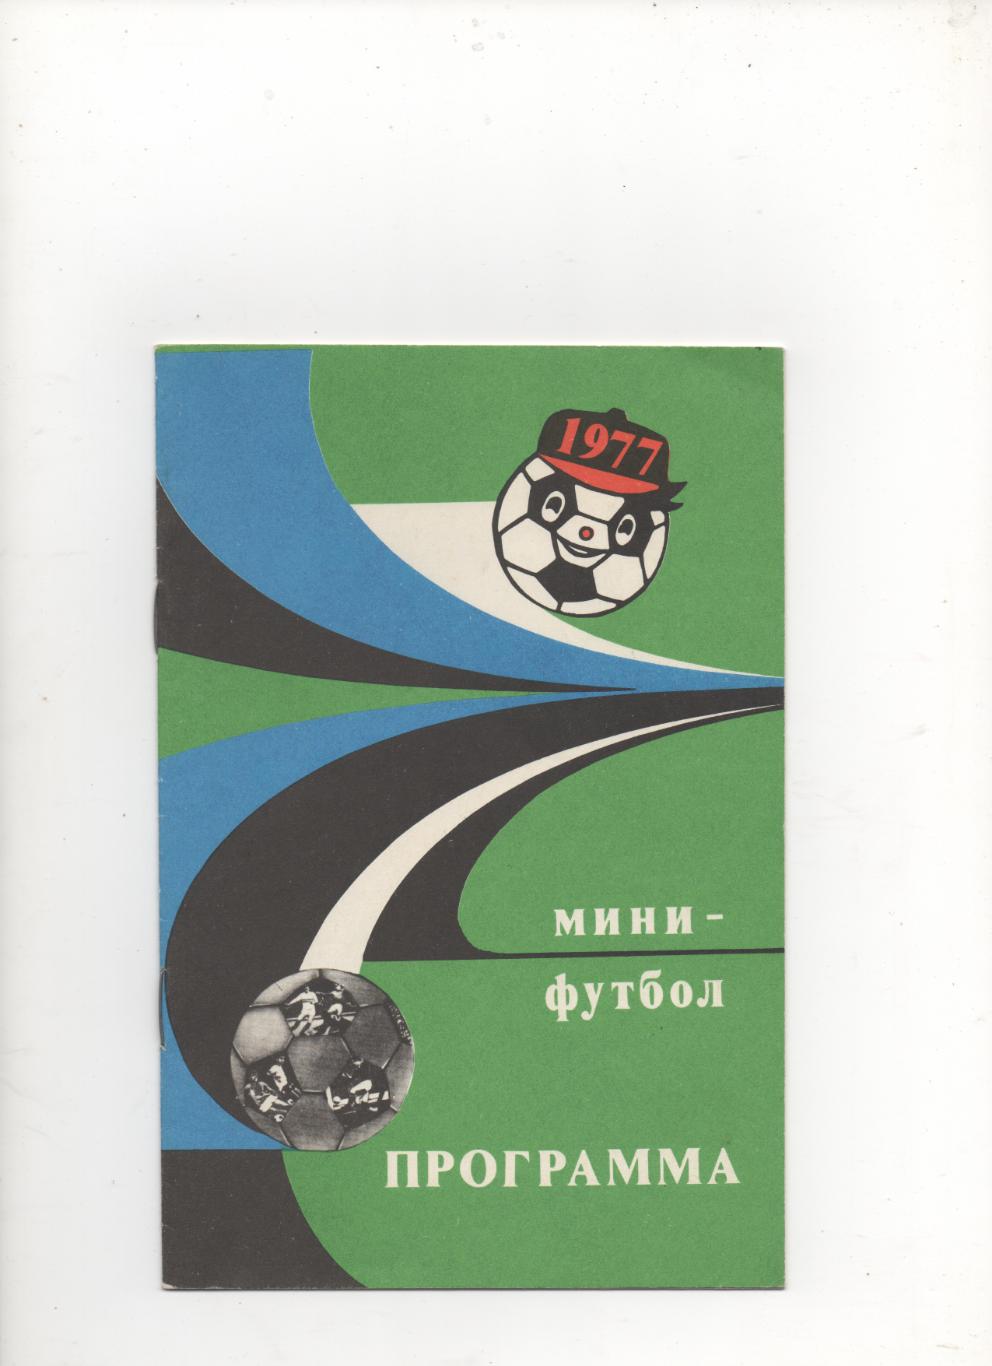 Турнир на приз Недели. Киевская группа - 1977.